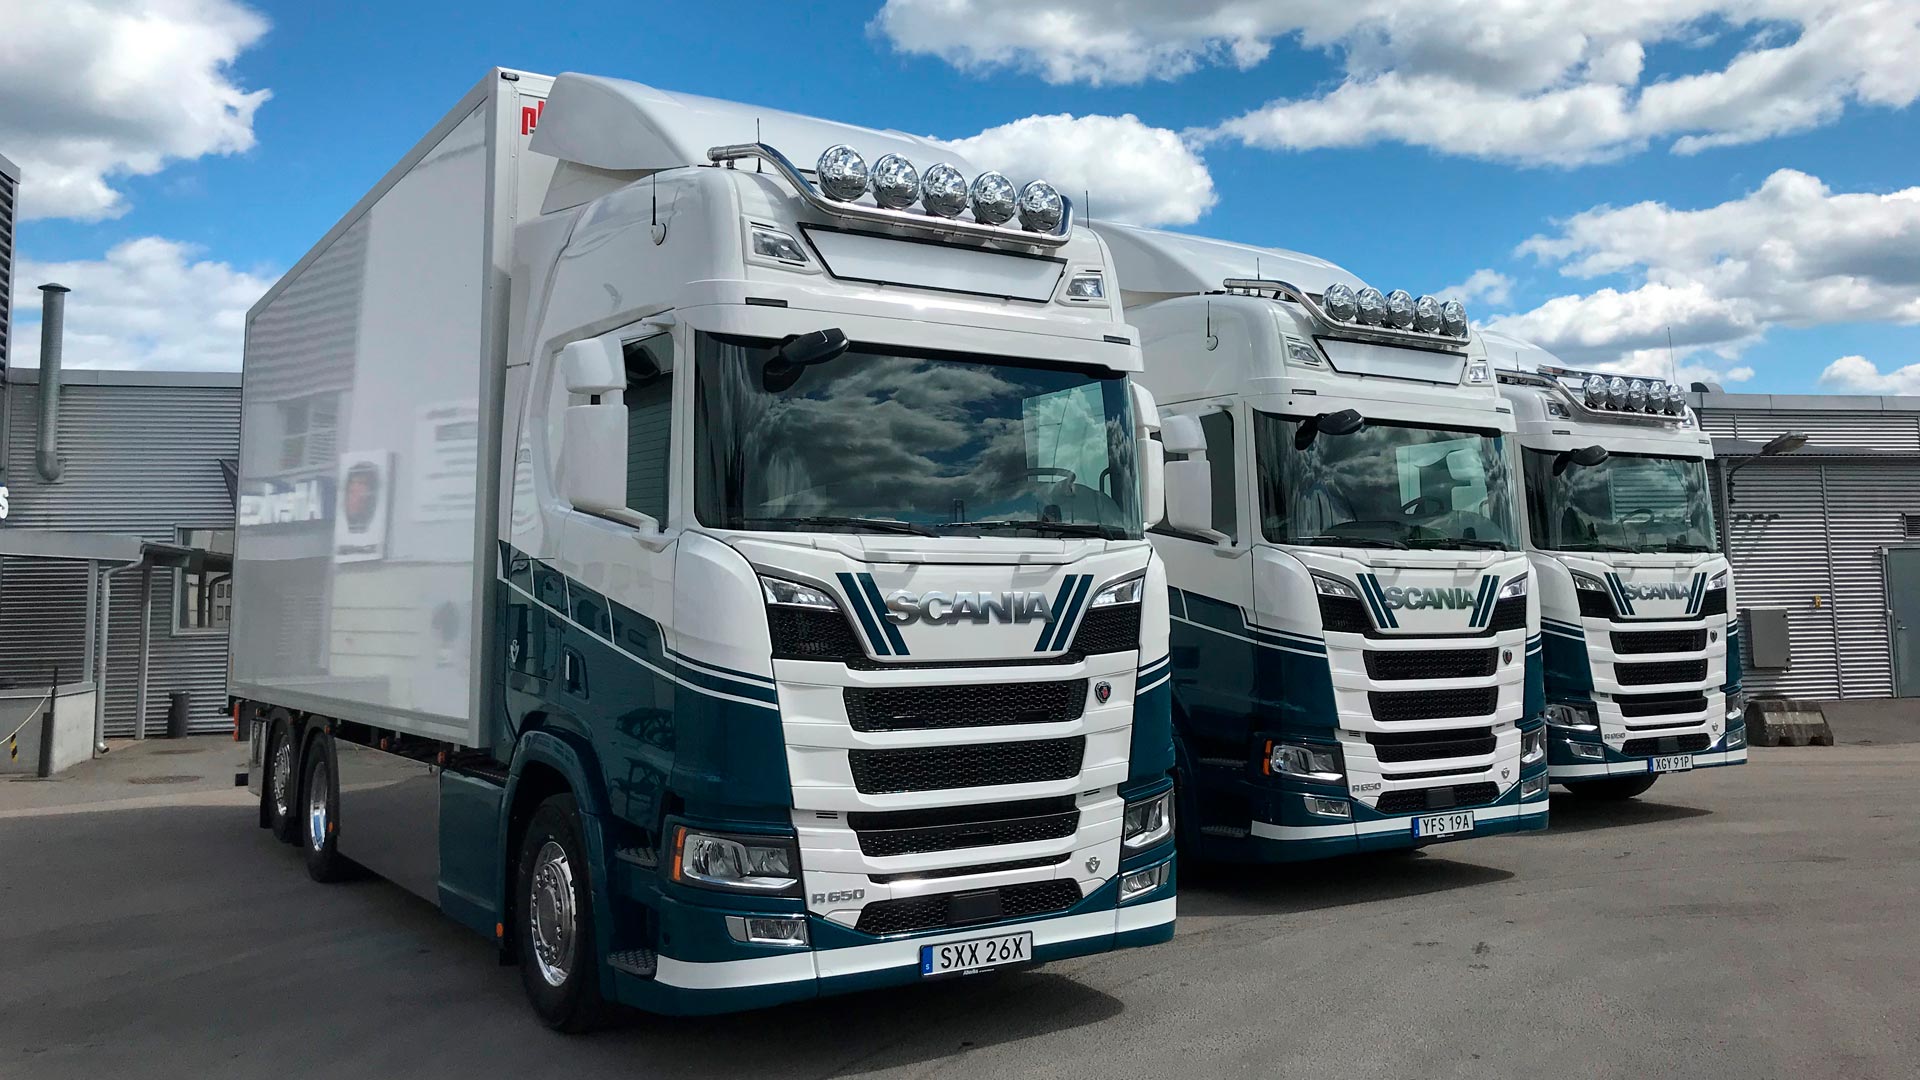 Nya Scanialastbilar är levererade till Vigo Edbergs Transport AB.